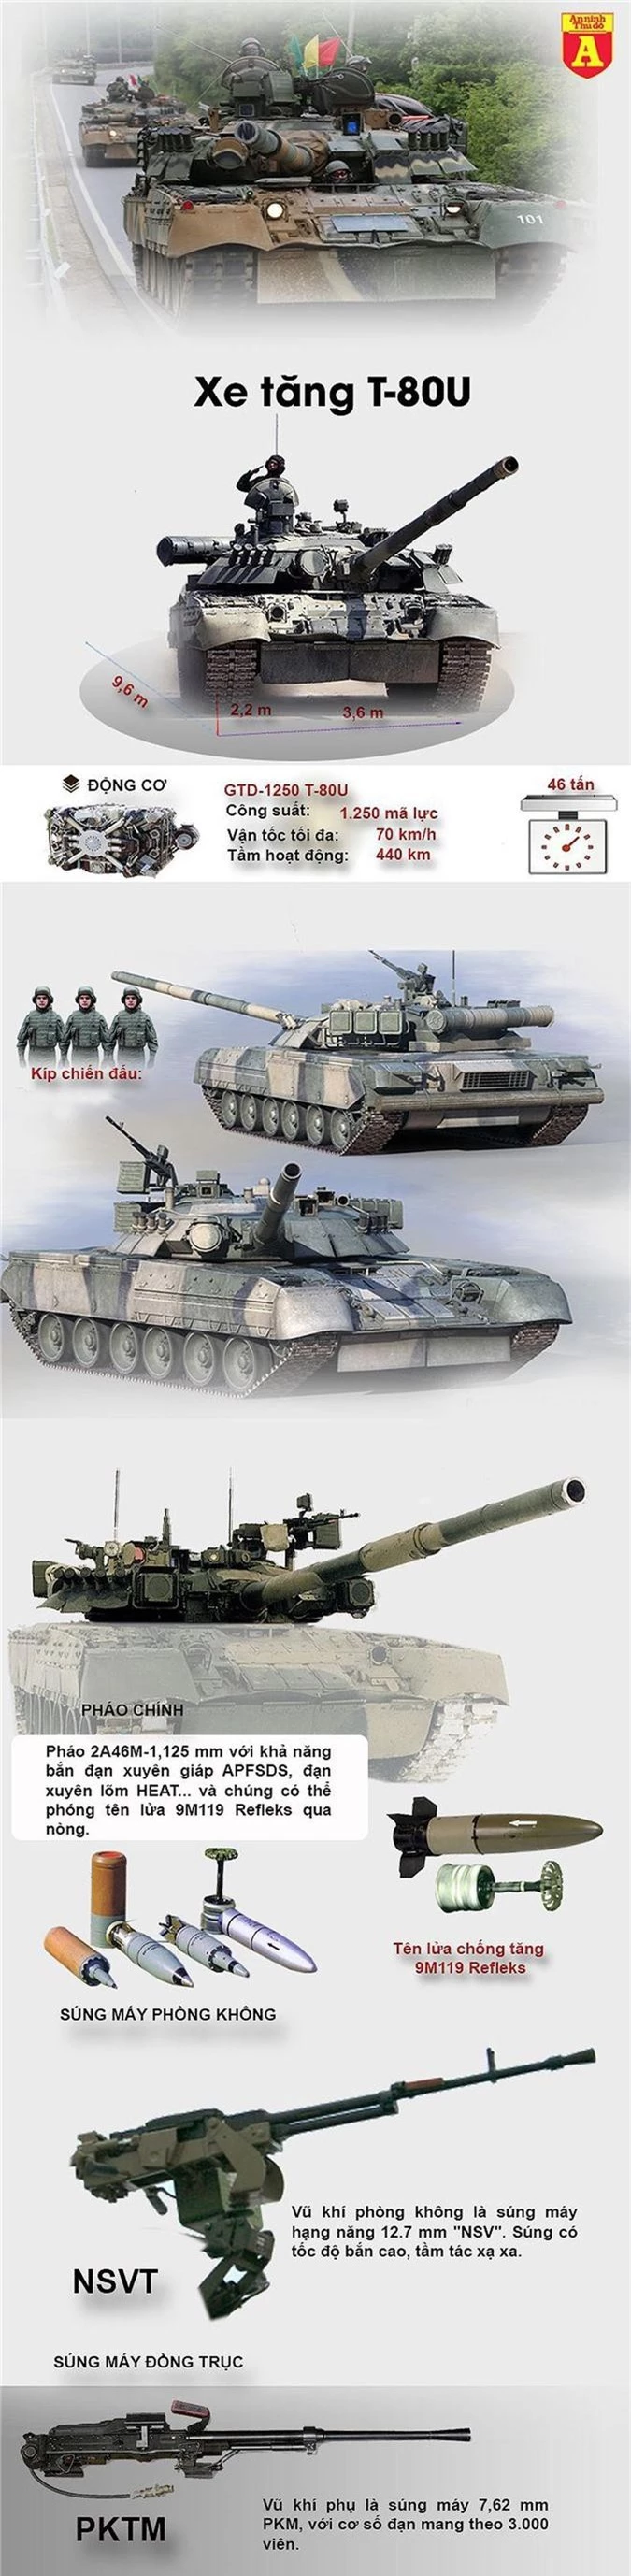 Xe tăng T-80U của Hàn Quốc